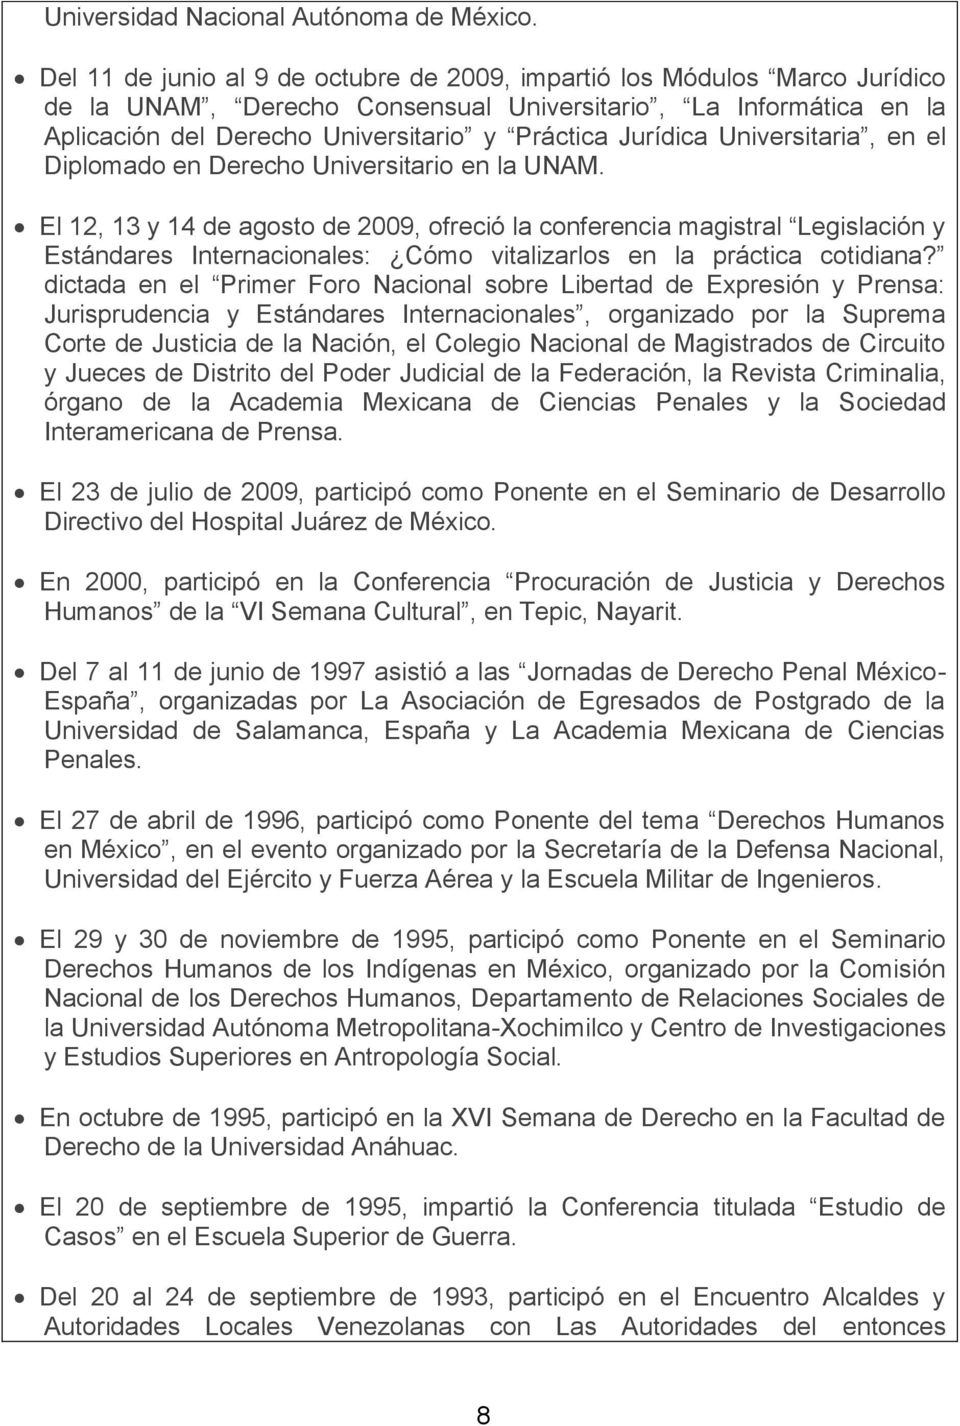 Jurídica Universitaria, en el Diplomado en Derecho Universitario en la UNAM.